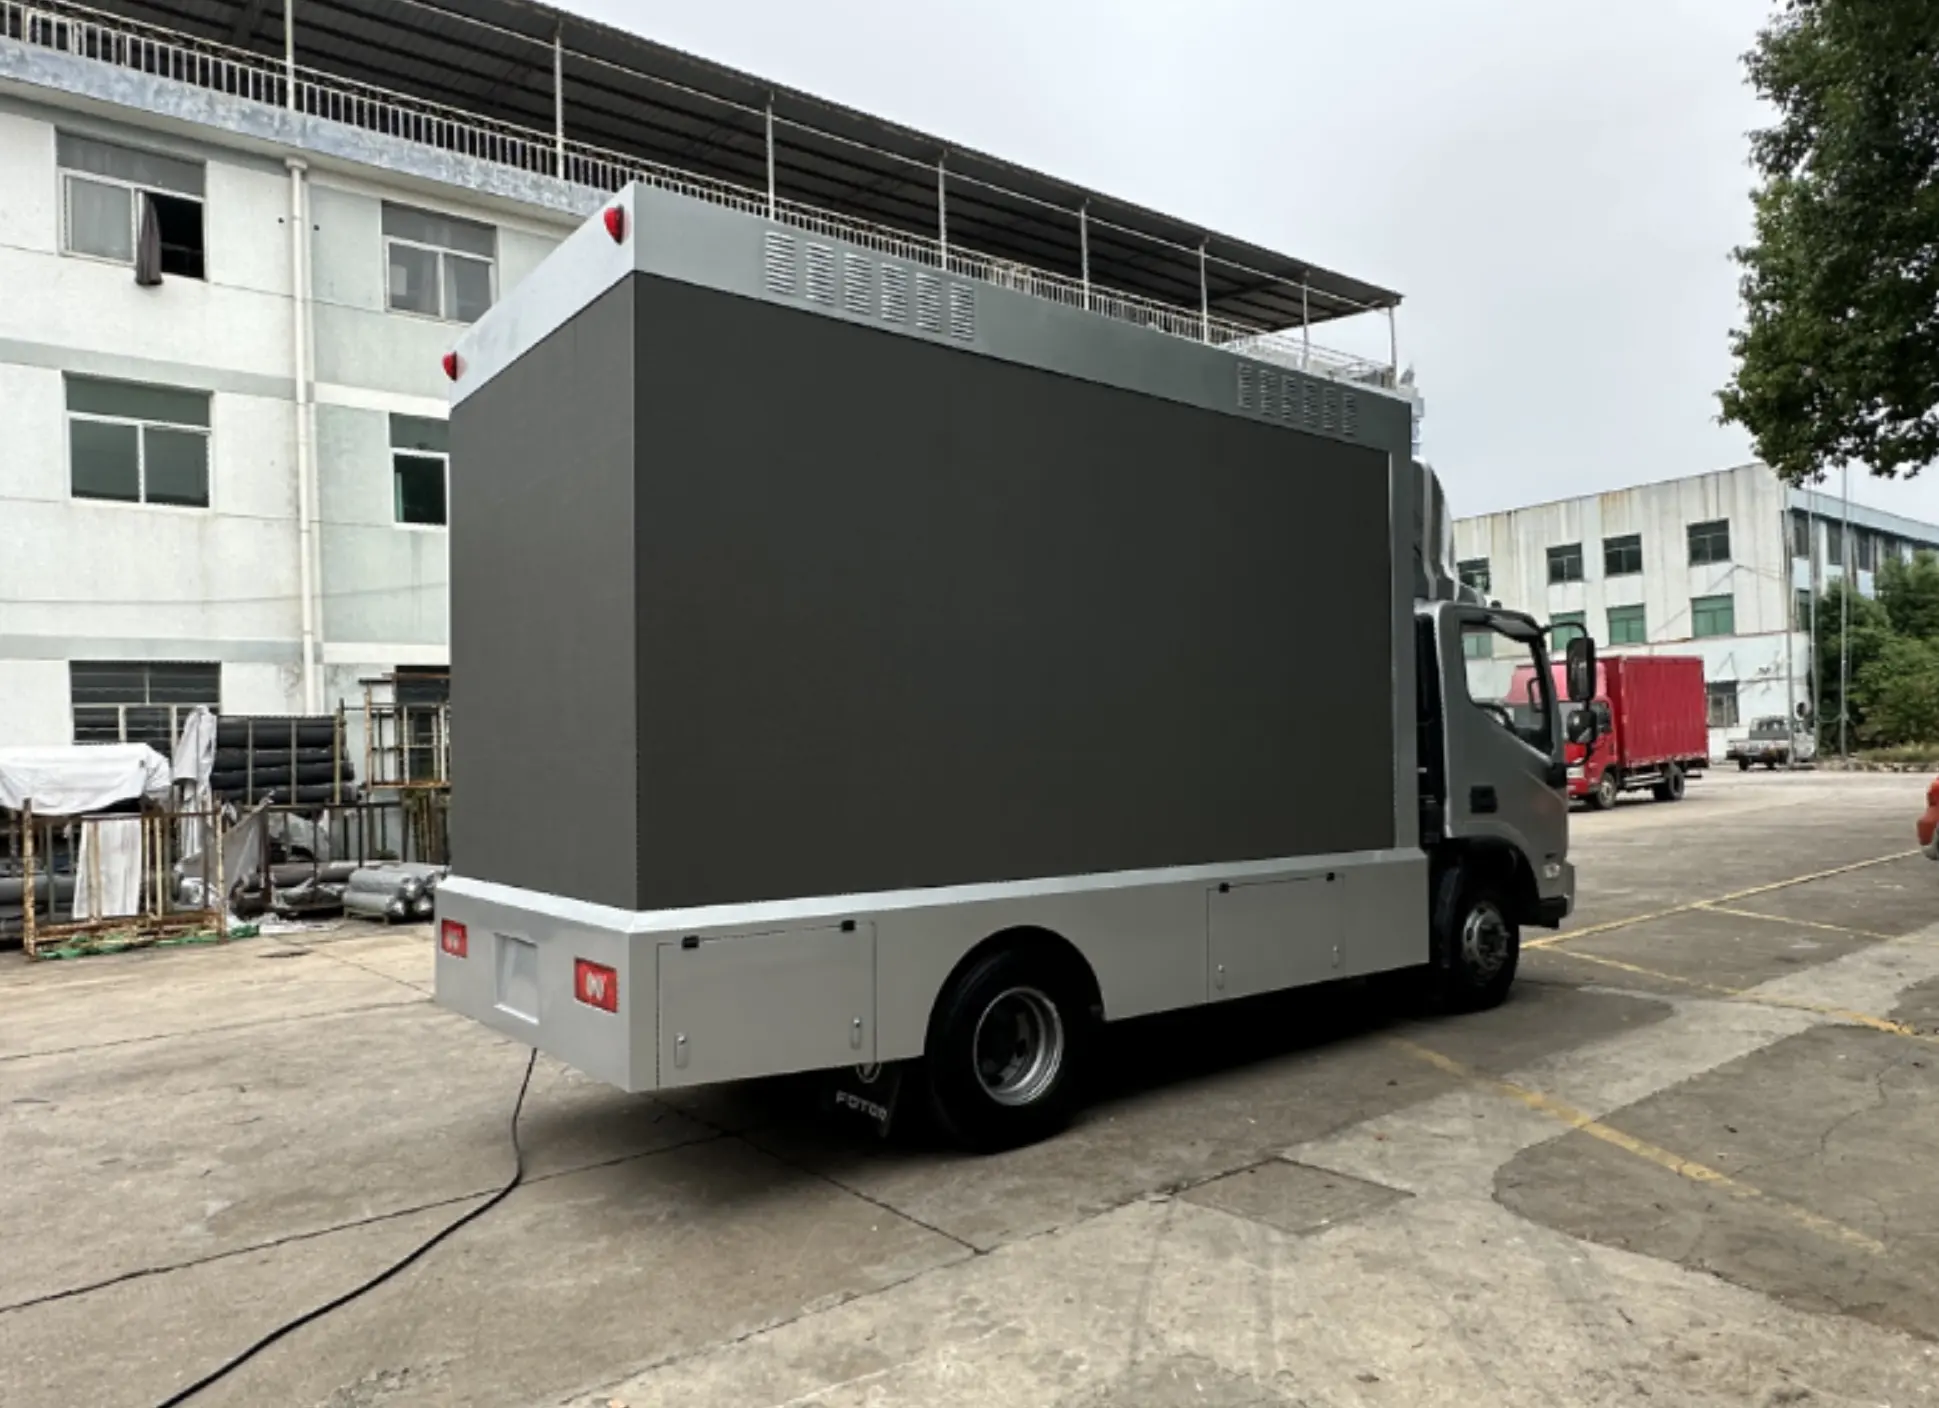 Diskon besar P3.91 pabrik 2021 3 sisi 3D iklan bergerak truk dipasang acara Natal papan iklan digital led untuk dijual